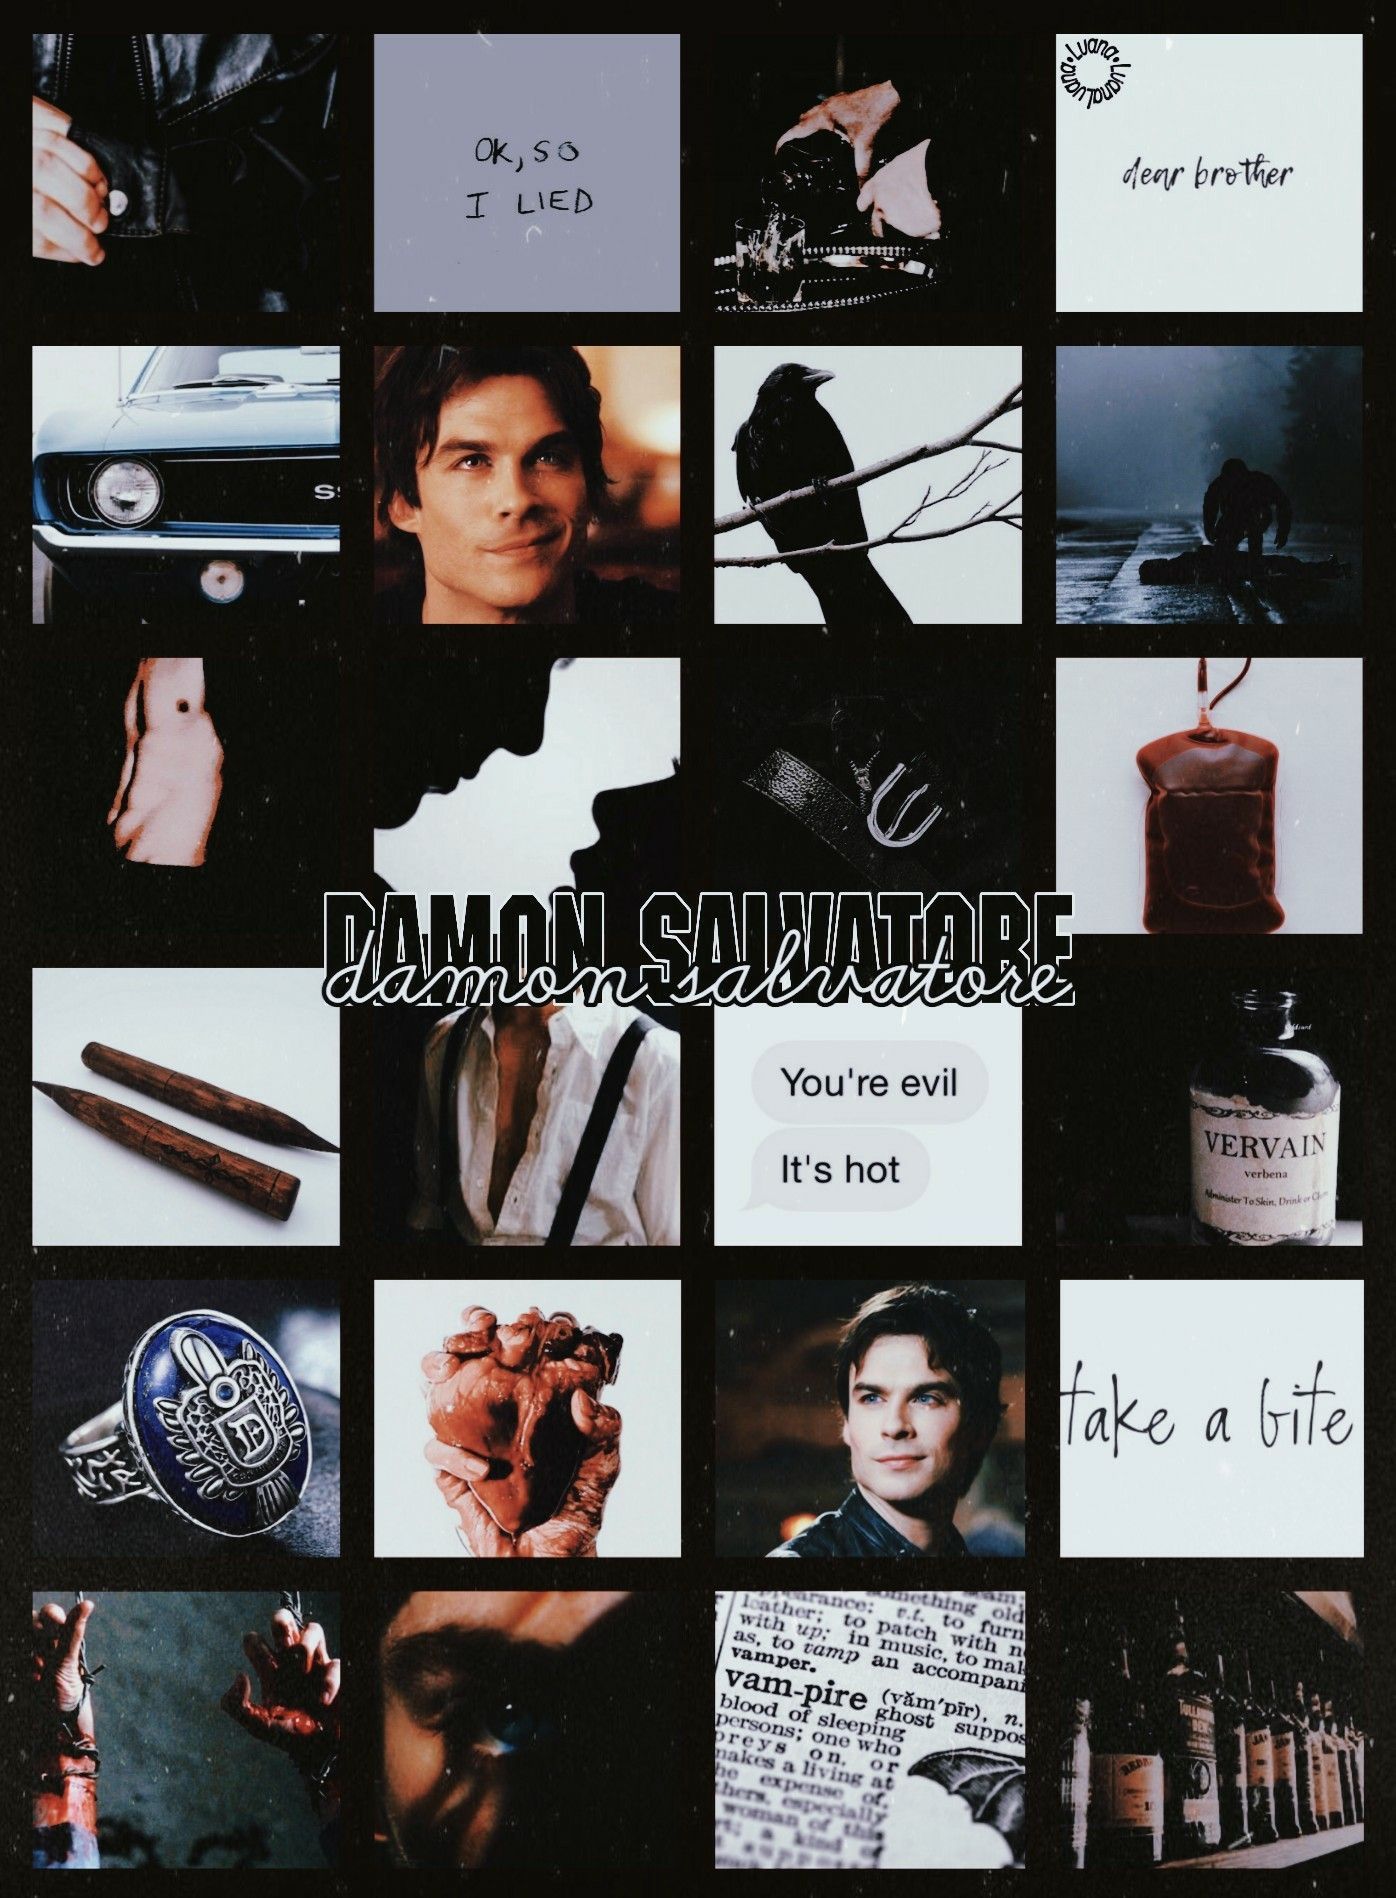 Aesthetic 2.0 Damon Salvatore, The Vampire Diaries. Vampire diaries wallpaper, Vampire diaries, Damon salvatore vampire diaries